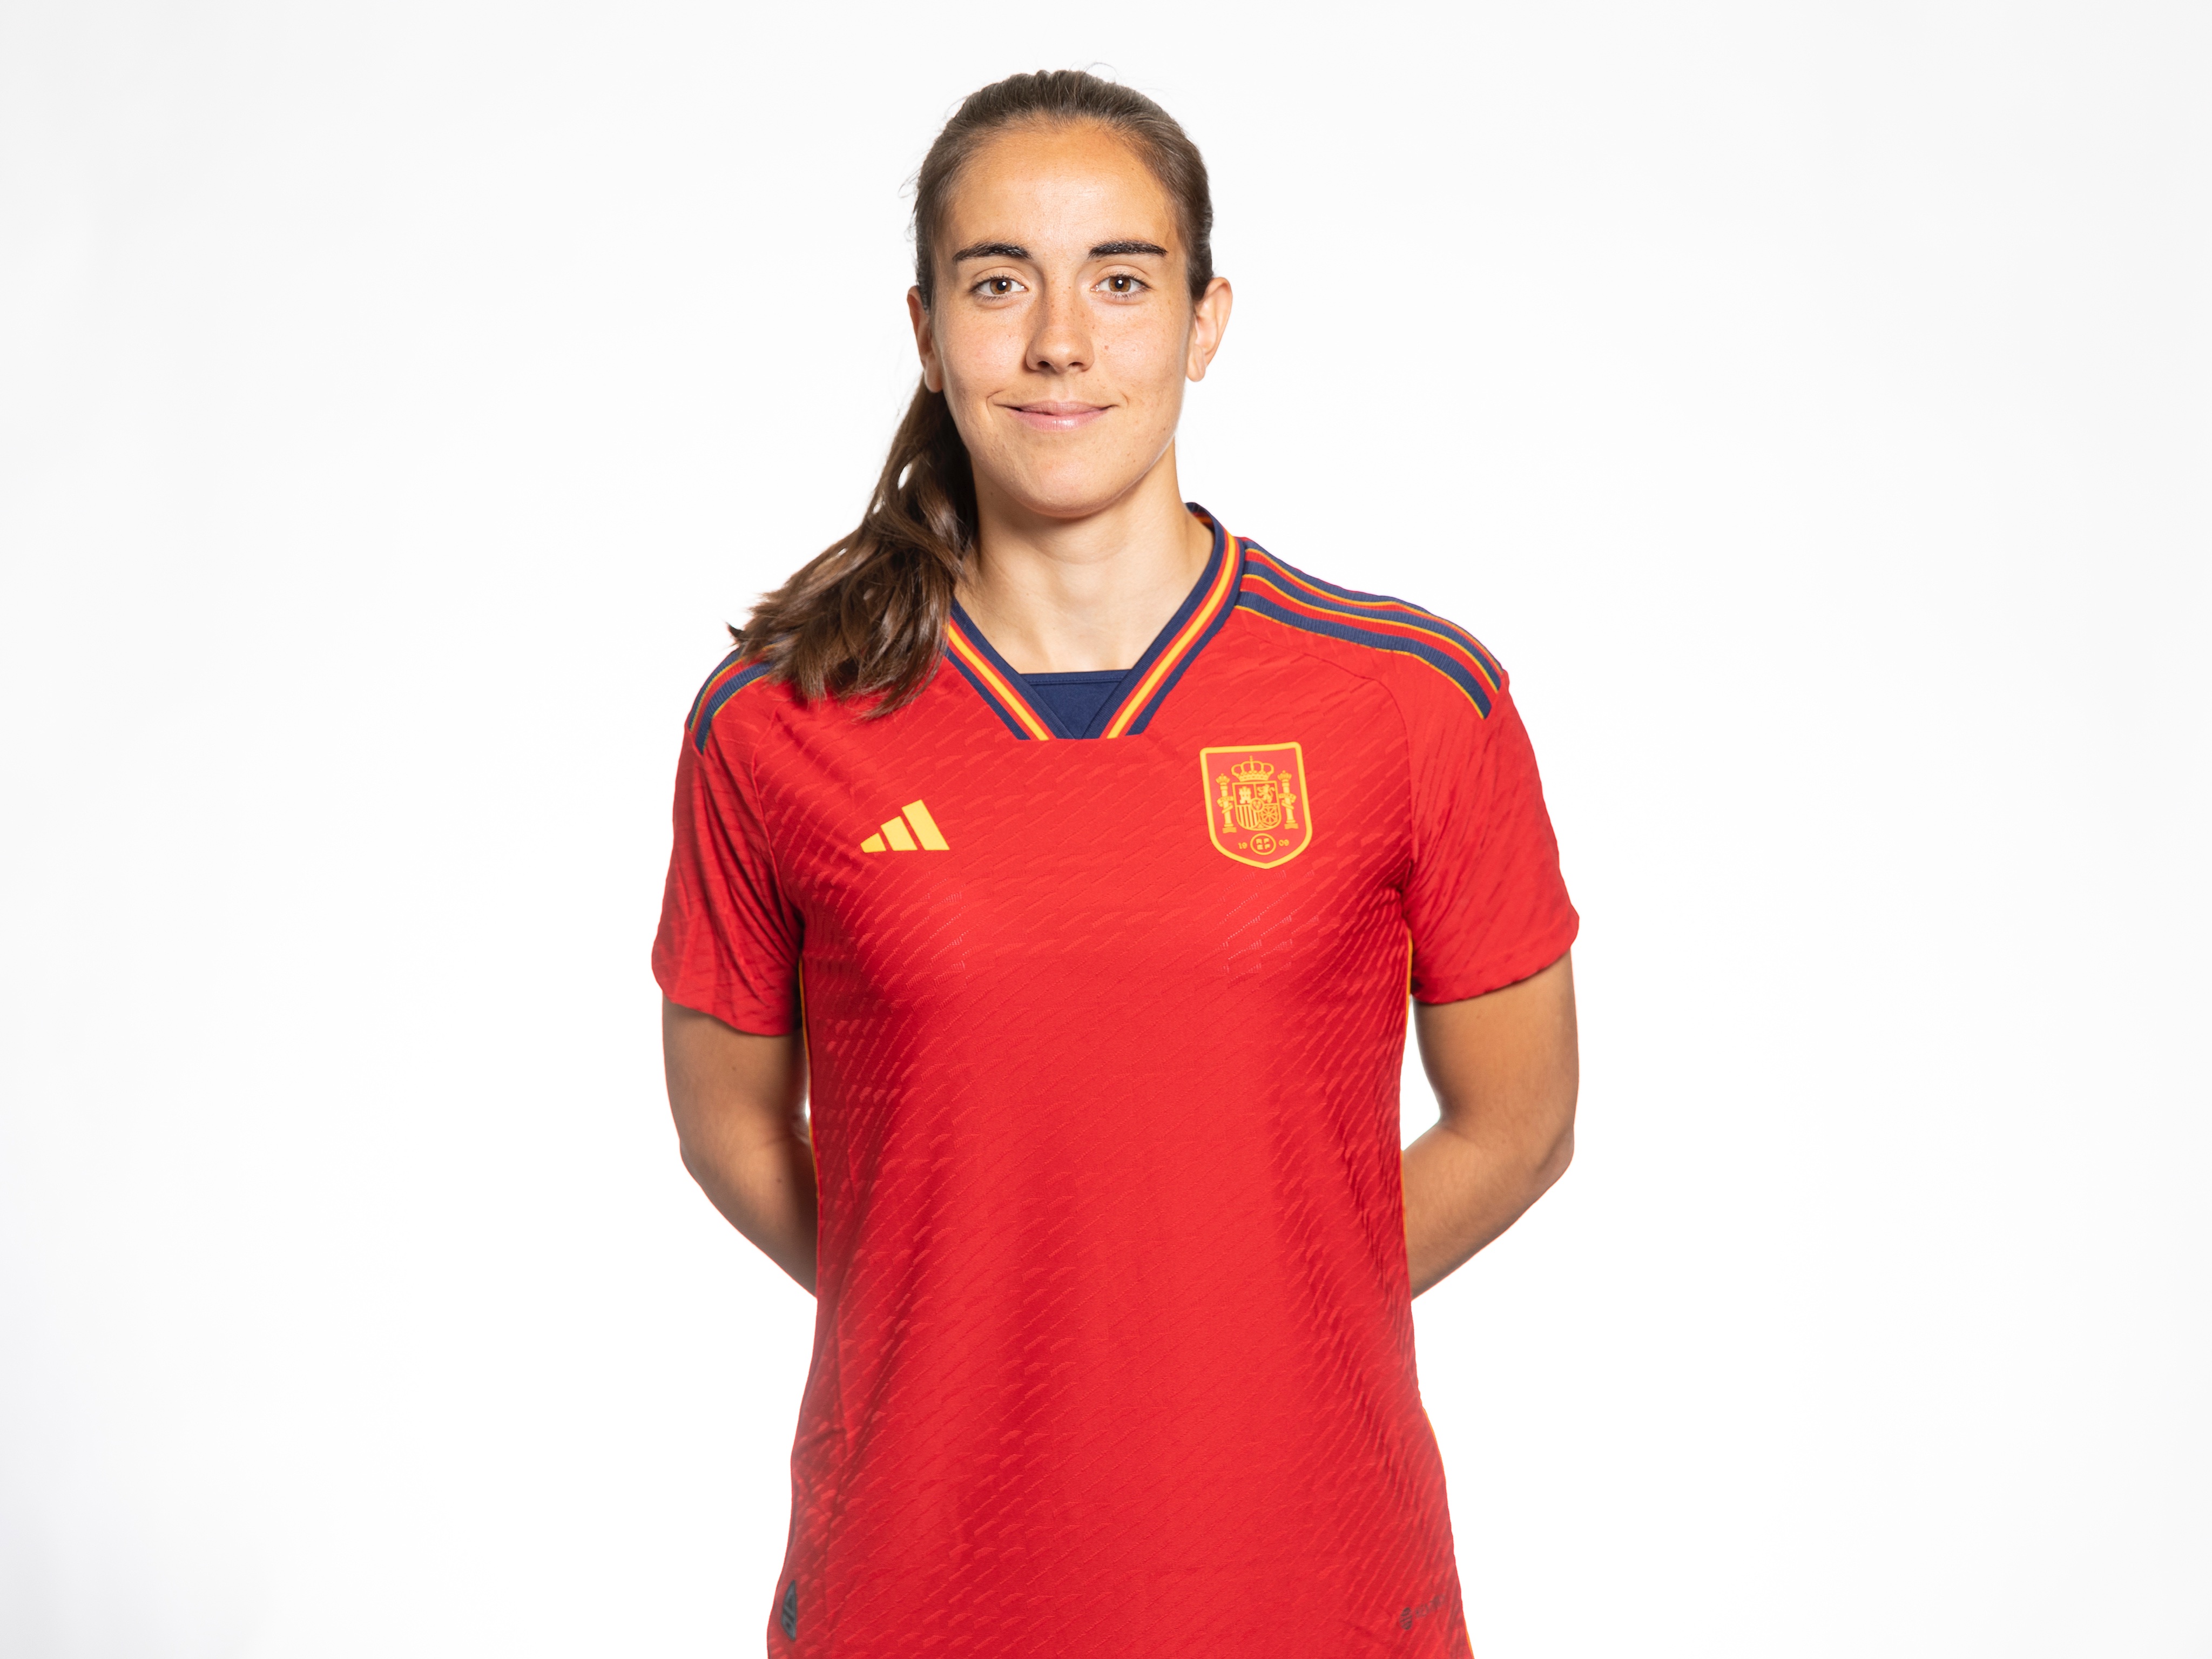 Twitter \ Selección Española Femenina de Fútbol على تويتر: "☀️ ¡BUENOS DÍAS! 🧵 ¿Hilo de las fotos con la nueva camiseta de @adidas_ES? 🙌 ¡¡Confirmamos!! 👕 𝗛𝗜𝗟𝗢 𝗖𝗢𝗡 𝗟𝗔 𝗡𝗨𝗘𝗩𝗔 #JugarLucharYGanar https://t.co/XwI0eTkb04"